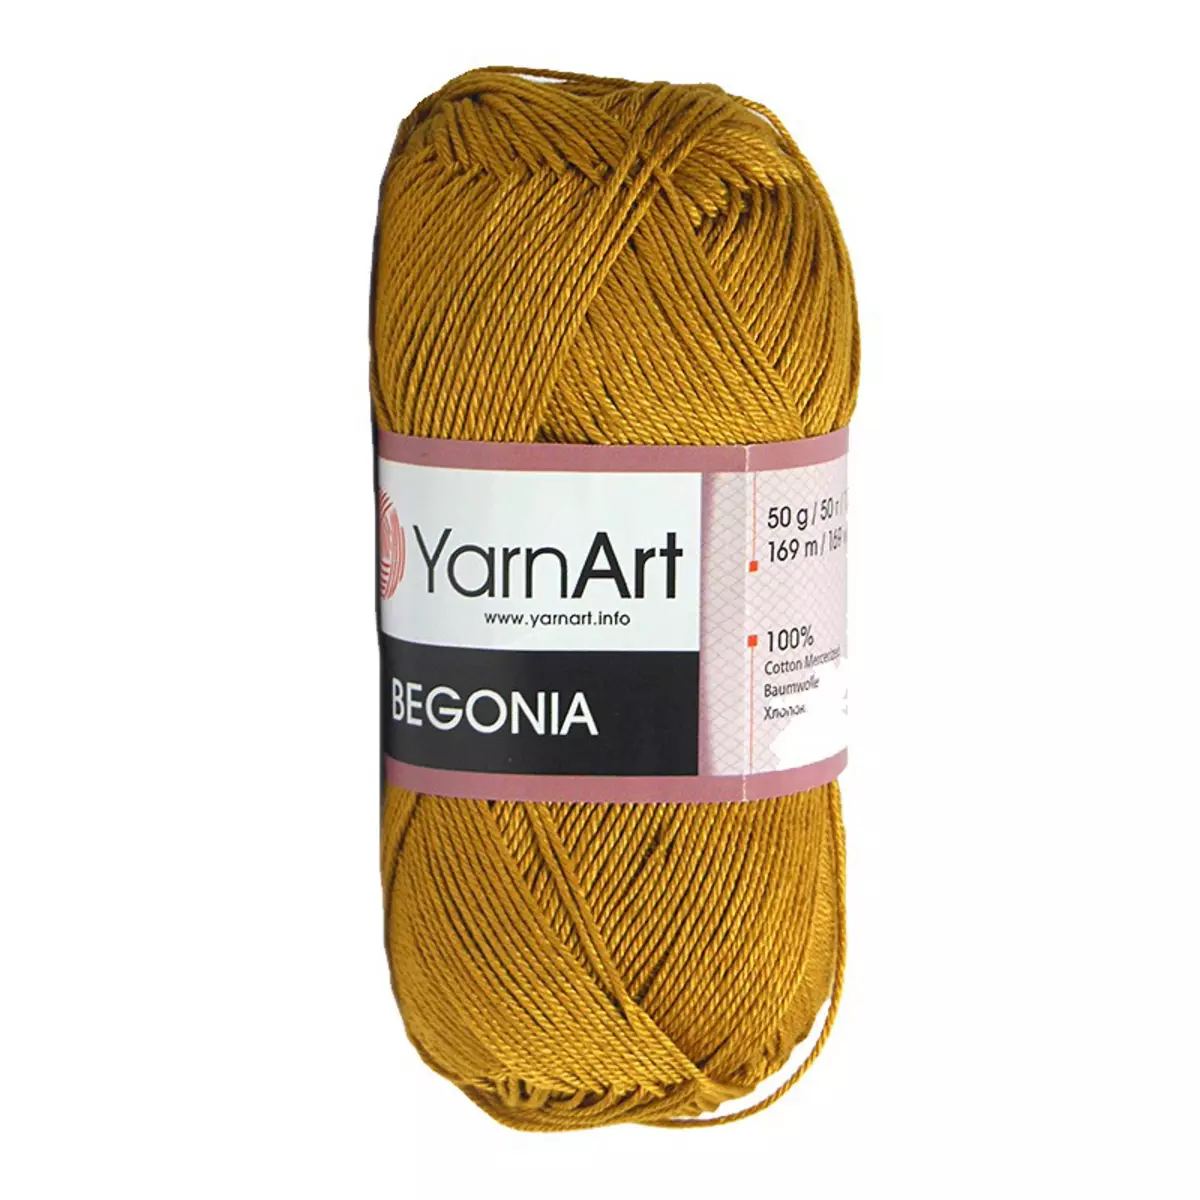 Yarnart Yarn: Din bumbac și tricotaje, angora și velor, fantezie și alte fire populare pentru tricotat 6699_14